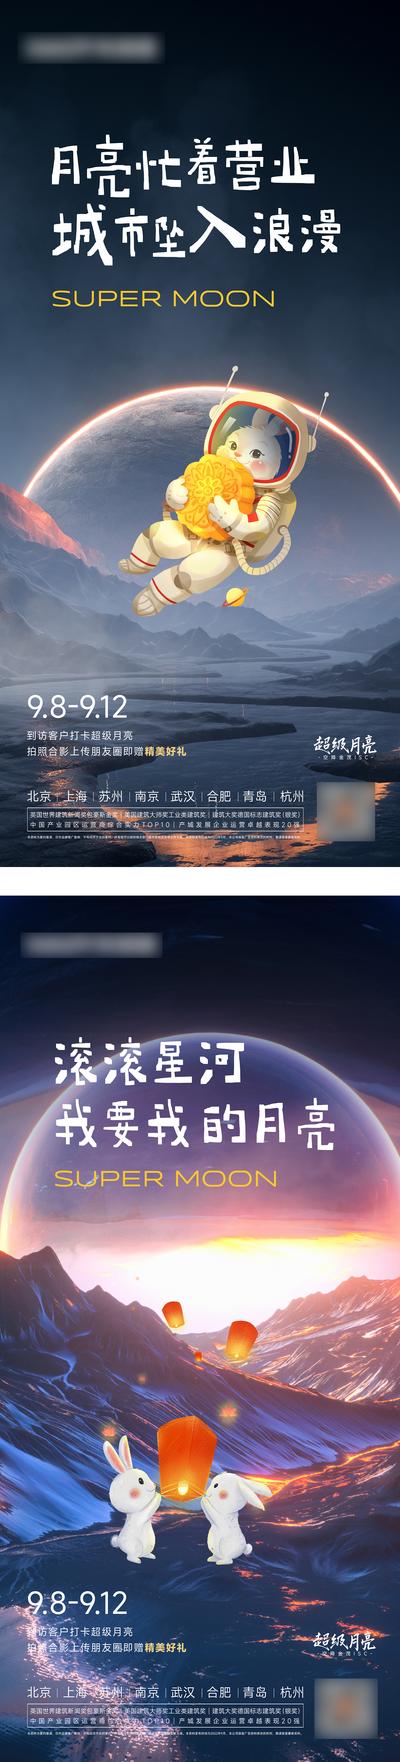 南门网 广告 海报 地产 中秋 超级月亮 活动 节日